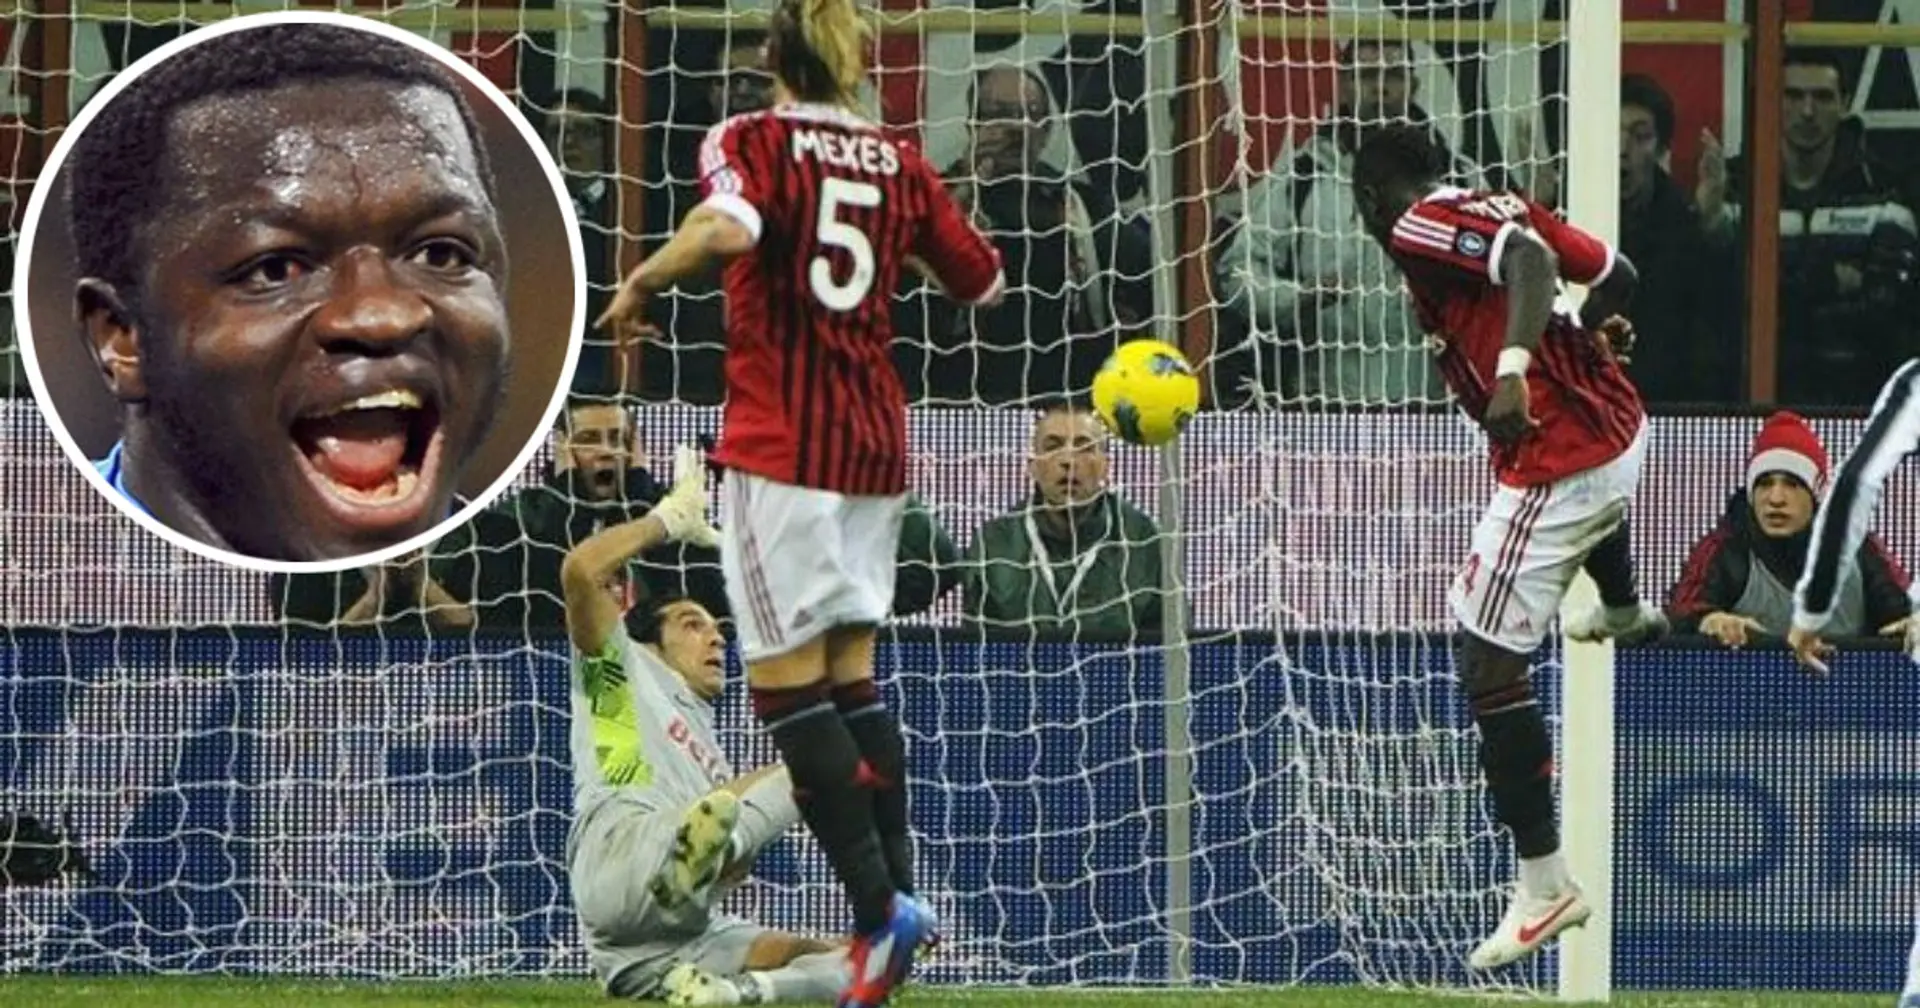 L'ex rossonero Muntari: "Col mio gol avremmo battuto la Juventus, ma poi non so se avremmo vinto lo Scudetto"